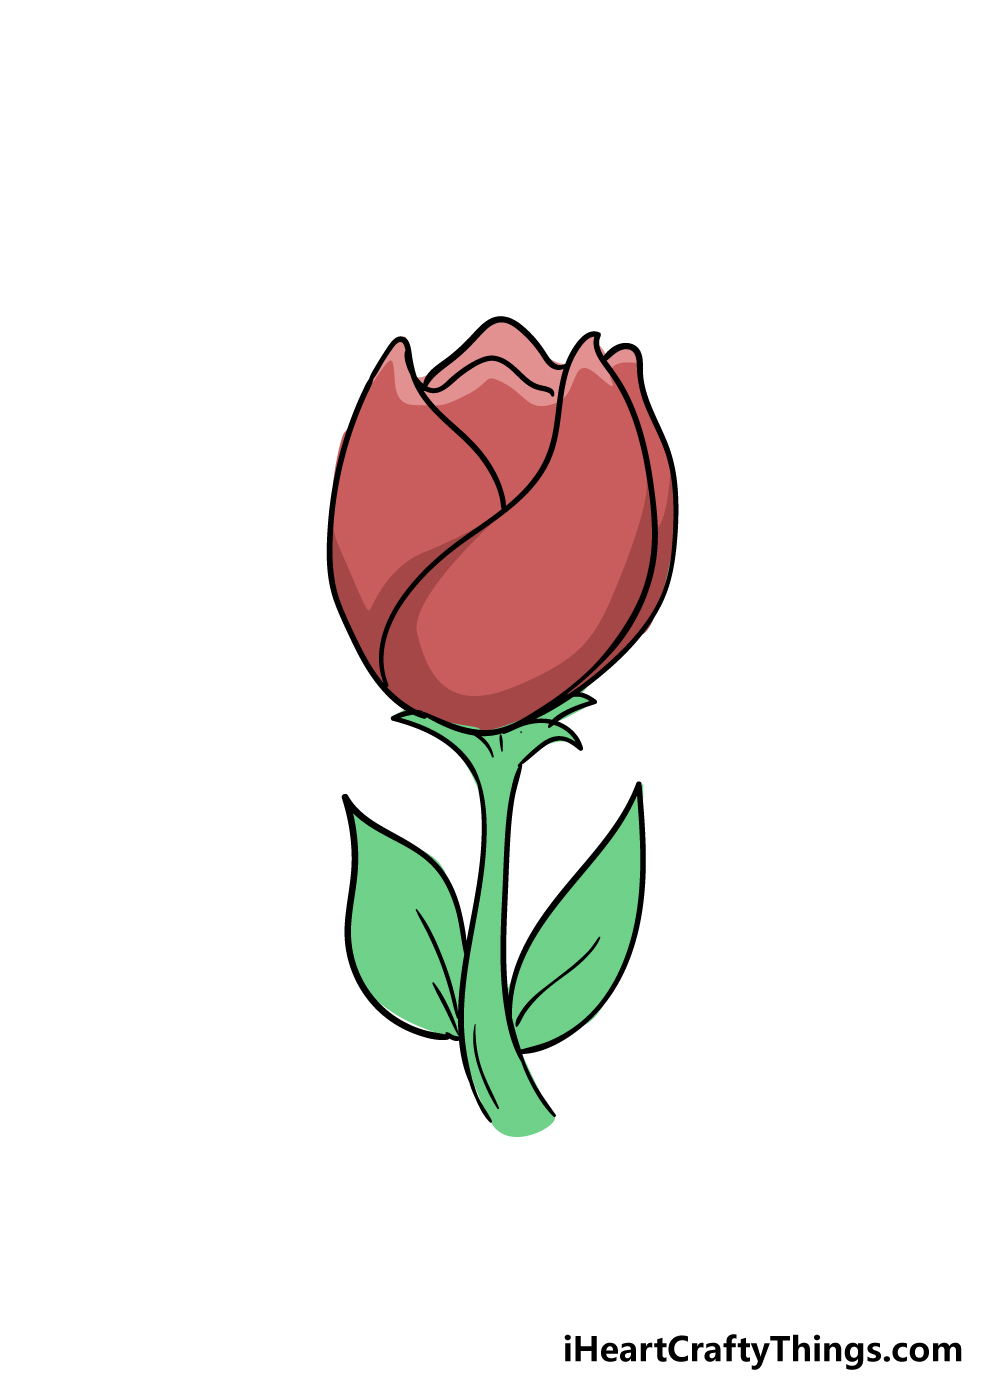 7 11 - Hướng dẫn cách vẽ hoa tulip đơn giản với 7 bước cơ bản